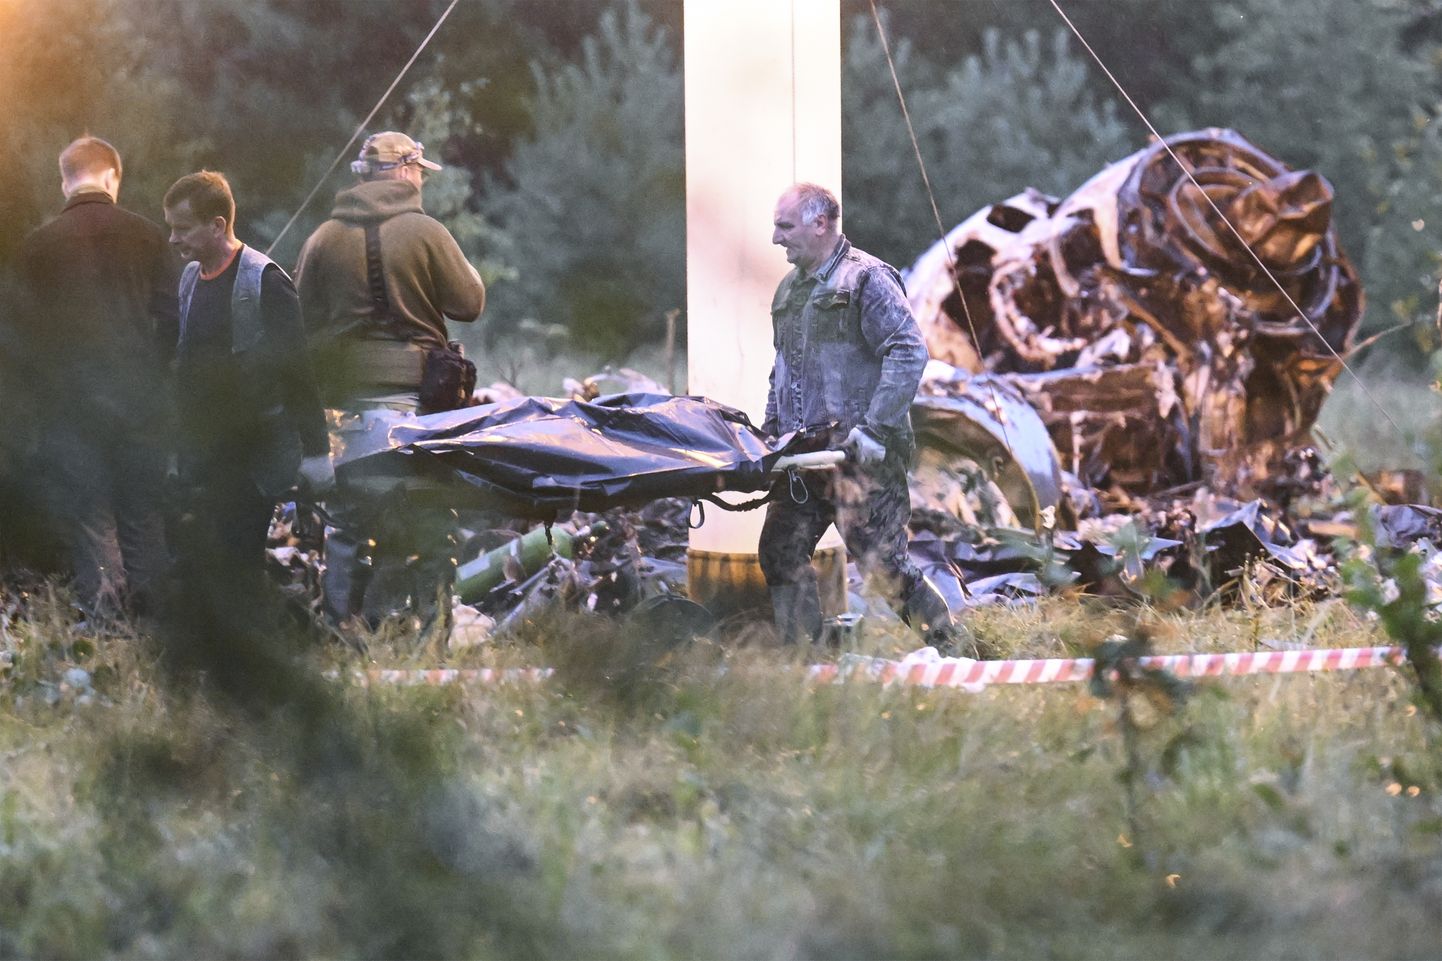 Kuigi väidetakse, et Wagneri variväe juhtfiguurid Prigožin ja Utkin hukkusid lennuõnnetuses, on õnnetuse põhjust ning hukunute isikuid võimatu adekvaatselt kontrollida. Avalikkusel on kasutada ainult Kremli versioon toimunust. Võimud korradavad lennuõnnetuse sündmuskohal uurimist ja hukkunute transporti Tveri regioonis. (AP Photo)  XPAG124